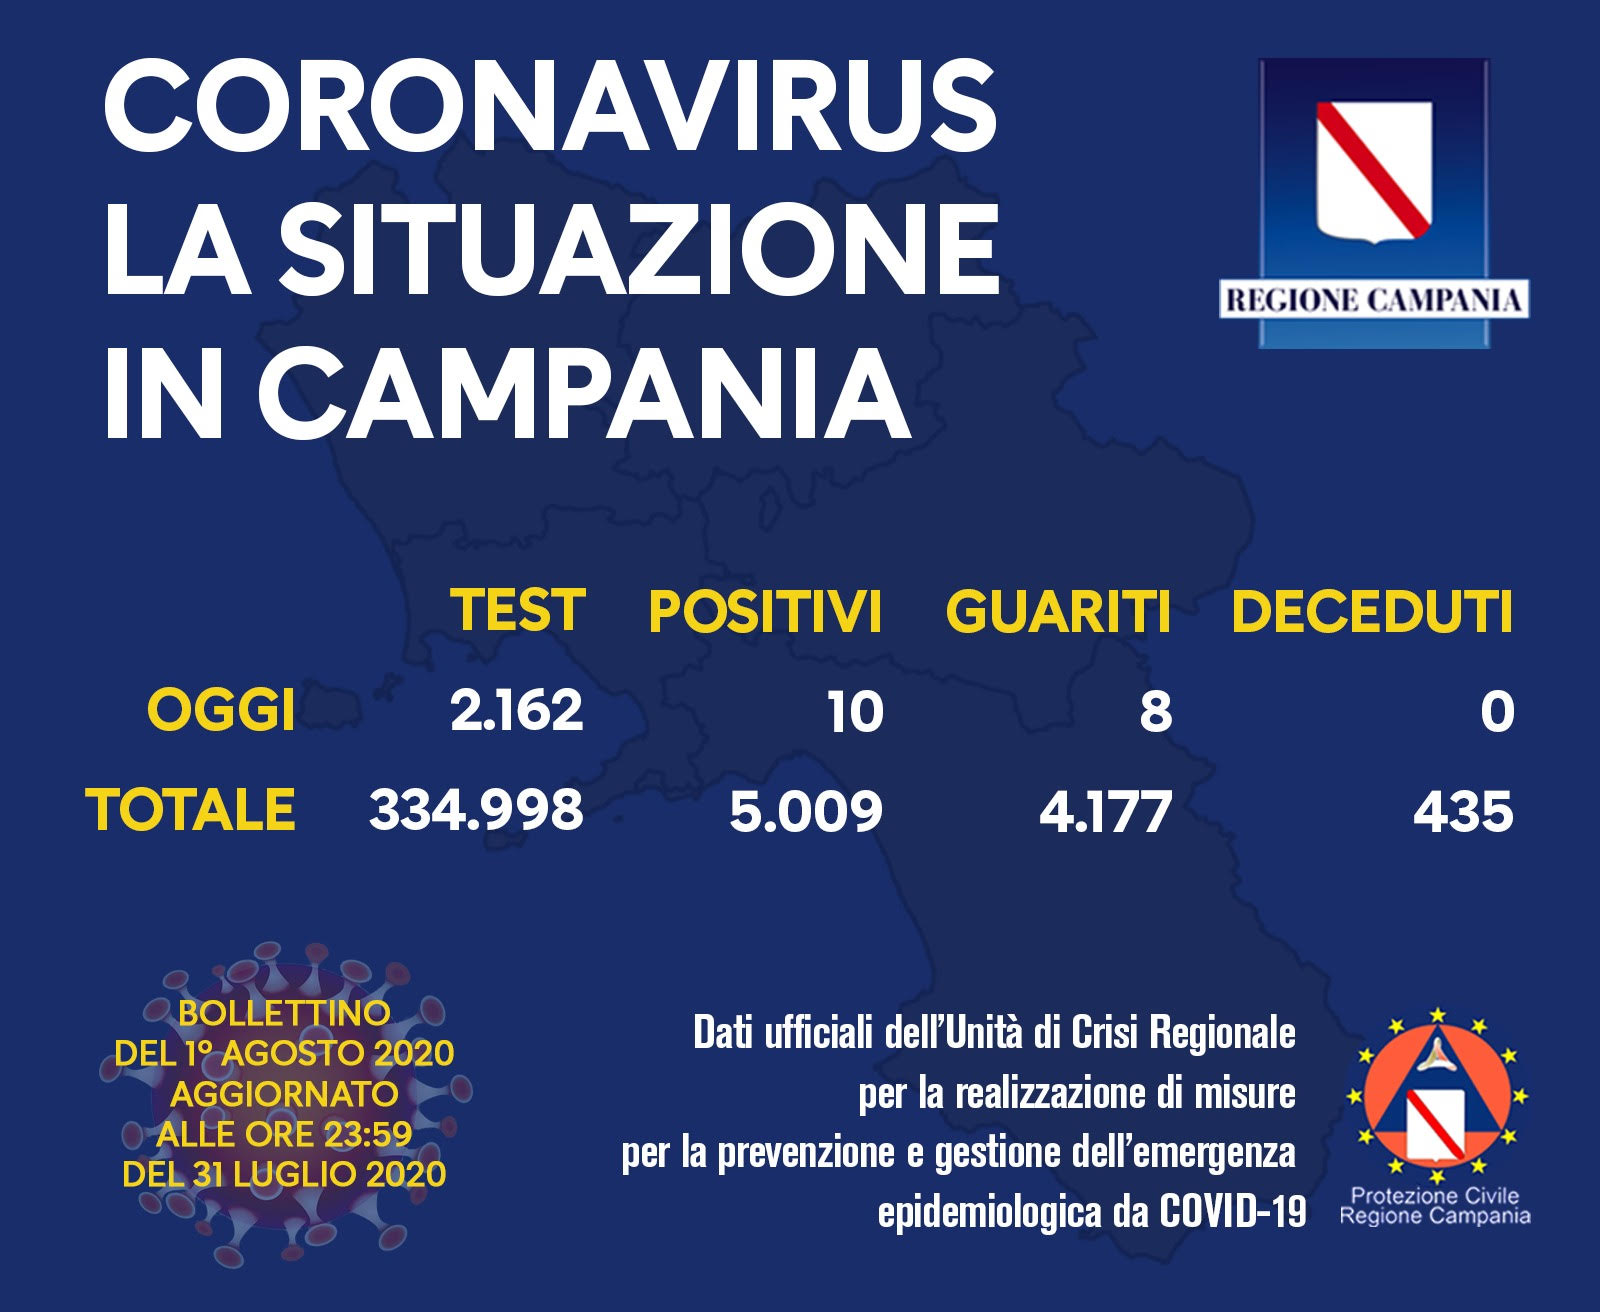 Coronaviurs Campania, superati i 5mila casi